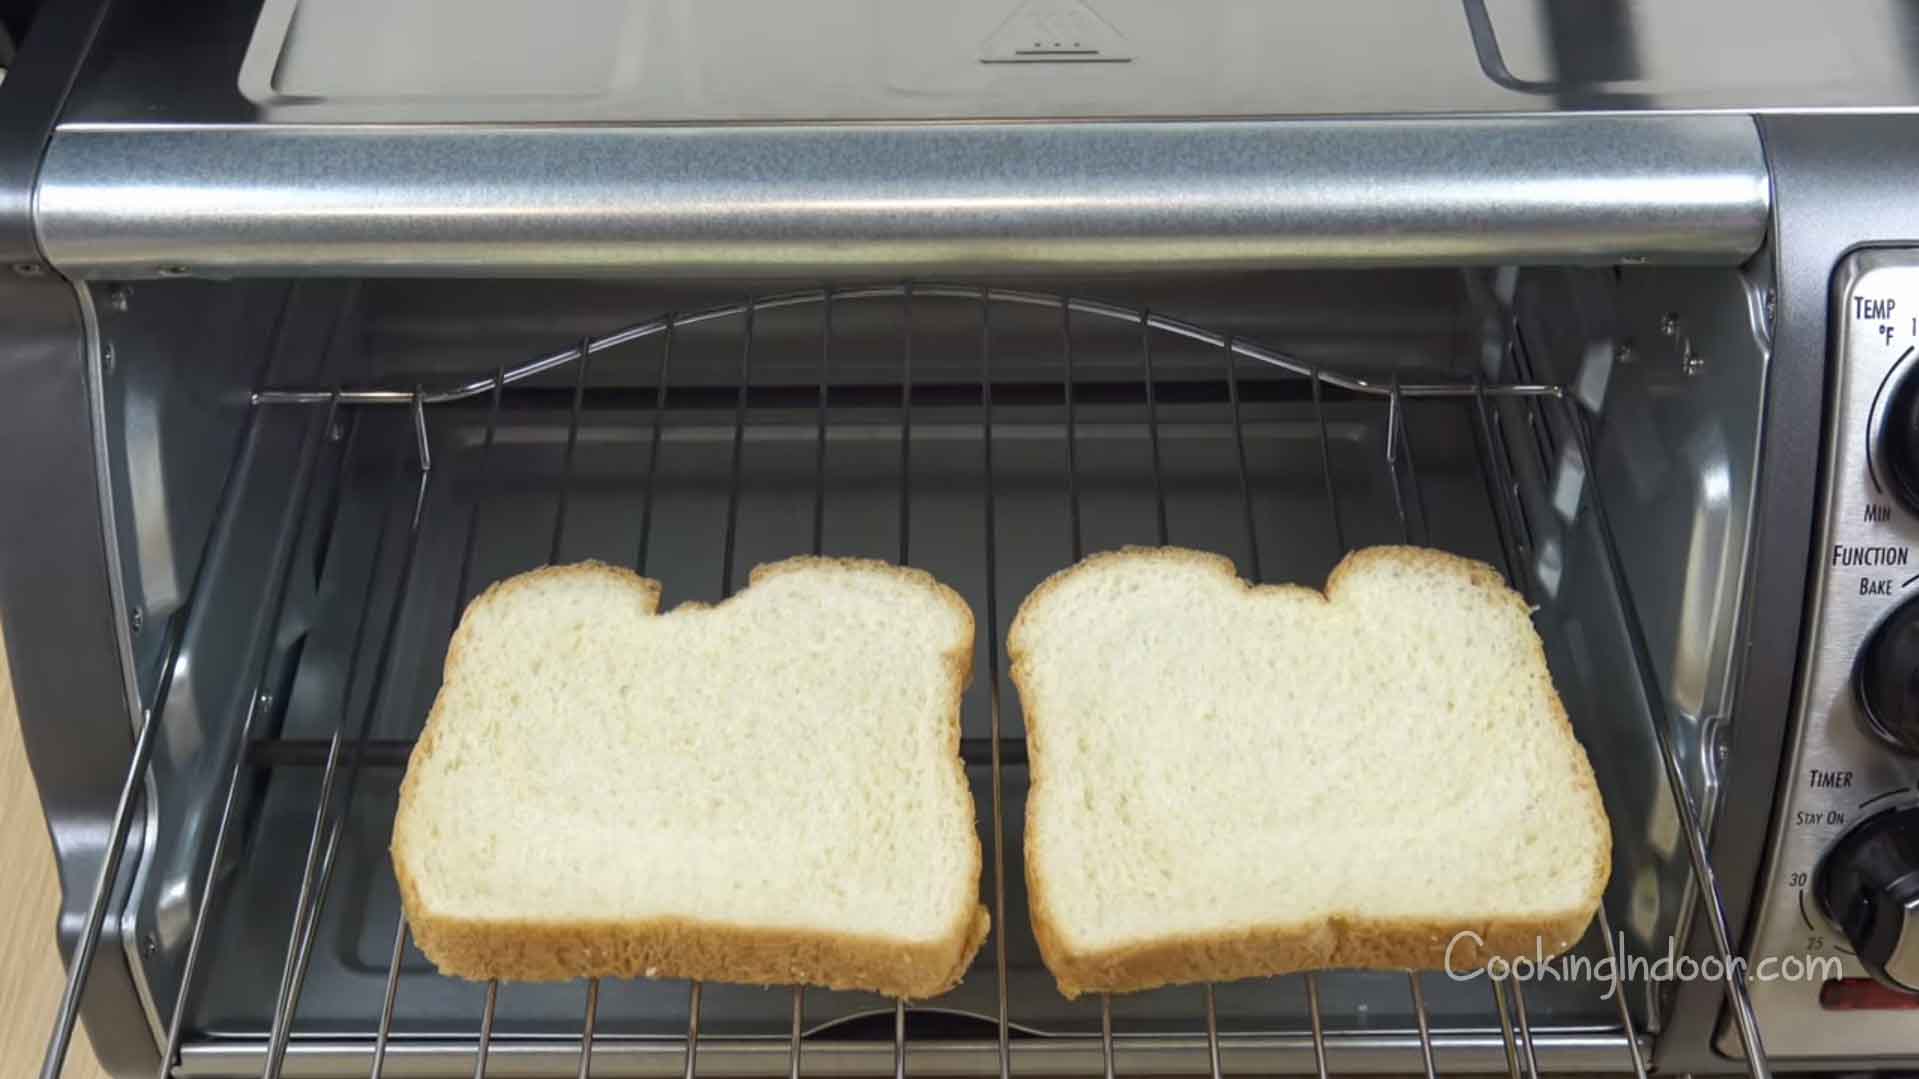 https://cookingindoor.com/wp-content/uploads/Best-stainless-steel-toaster-oven.jpg